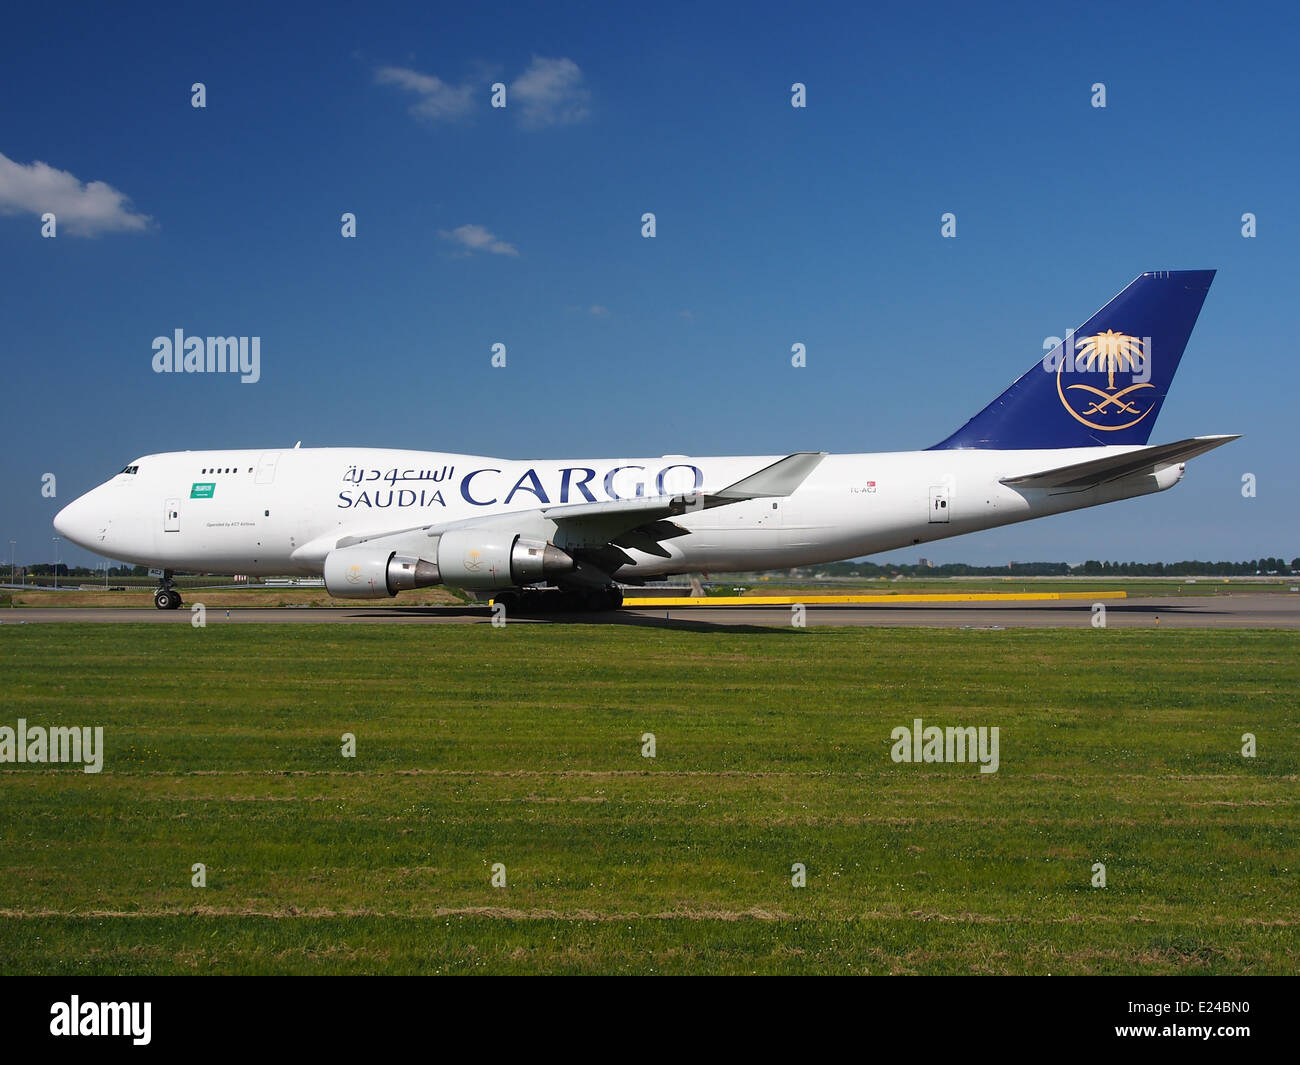 TC-ACJ Saudi Arabian Airlines Boeing 747-433(BDSF) Rollen auf dem Flughafen Schiphol (AMS - EHAM), die Niederlande, Mai 18. 2014, Pic-7 Stockfoto